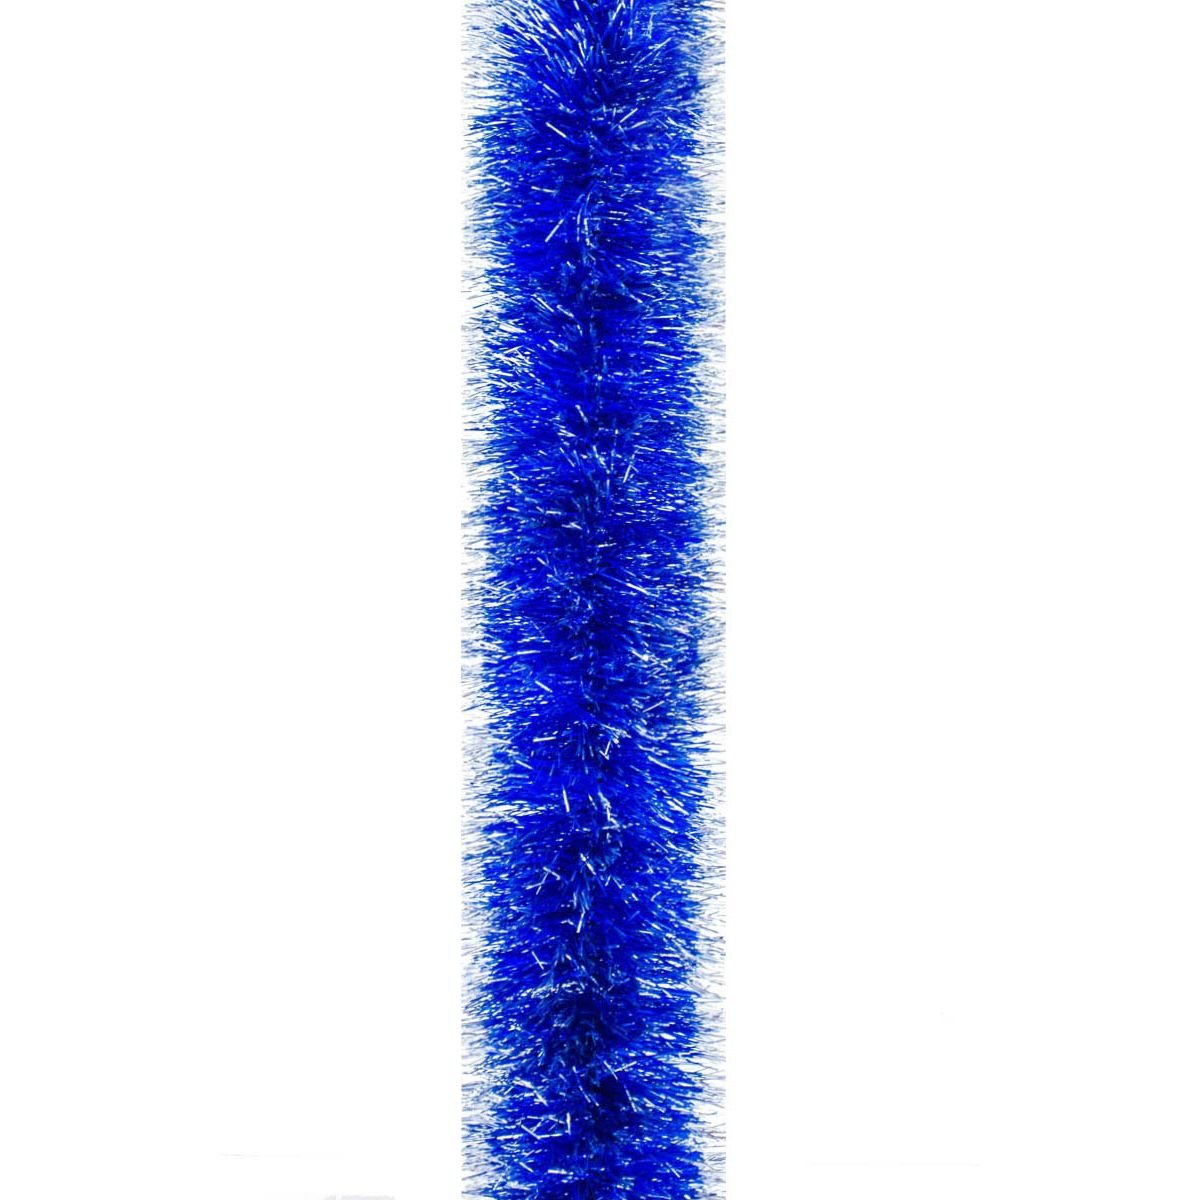 Мішура Novogod'ko 10 см 3 м синя зі срібними кінчиками (980338) - фото 1